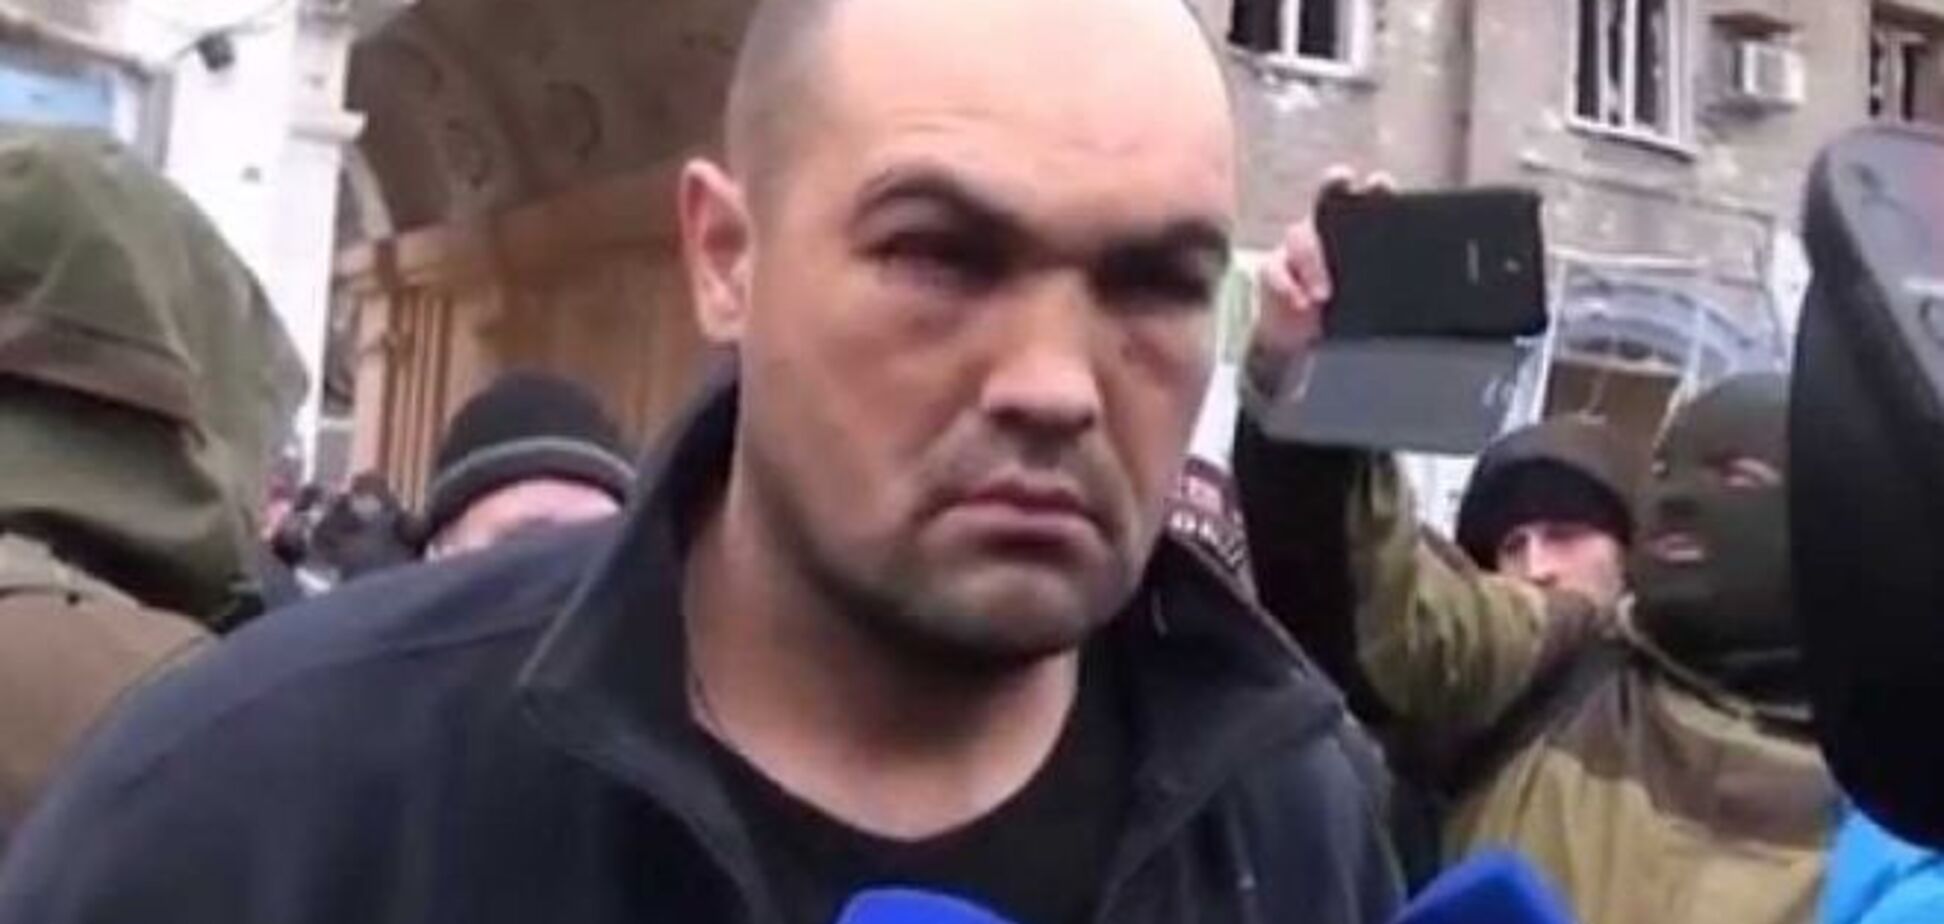 На пленных украинских бойцов люди набрасывались прямо на улице - Кузьминых